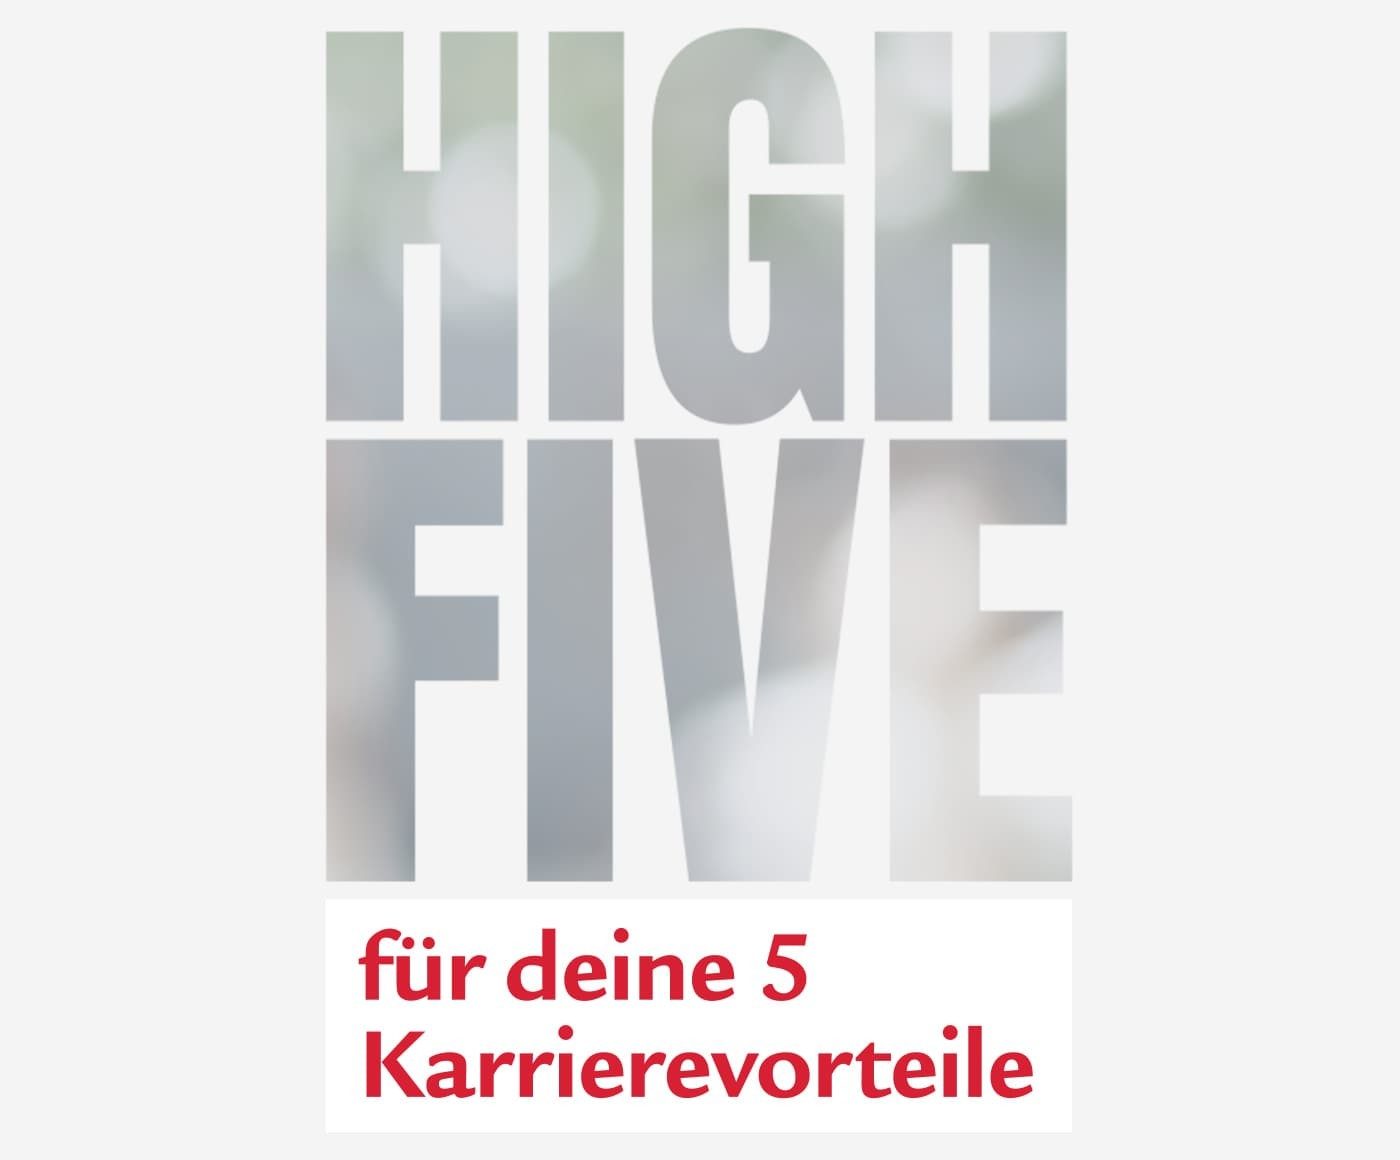 High Five für deine fünf Karrierevorteile